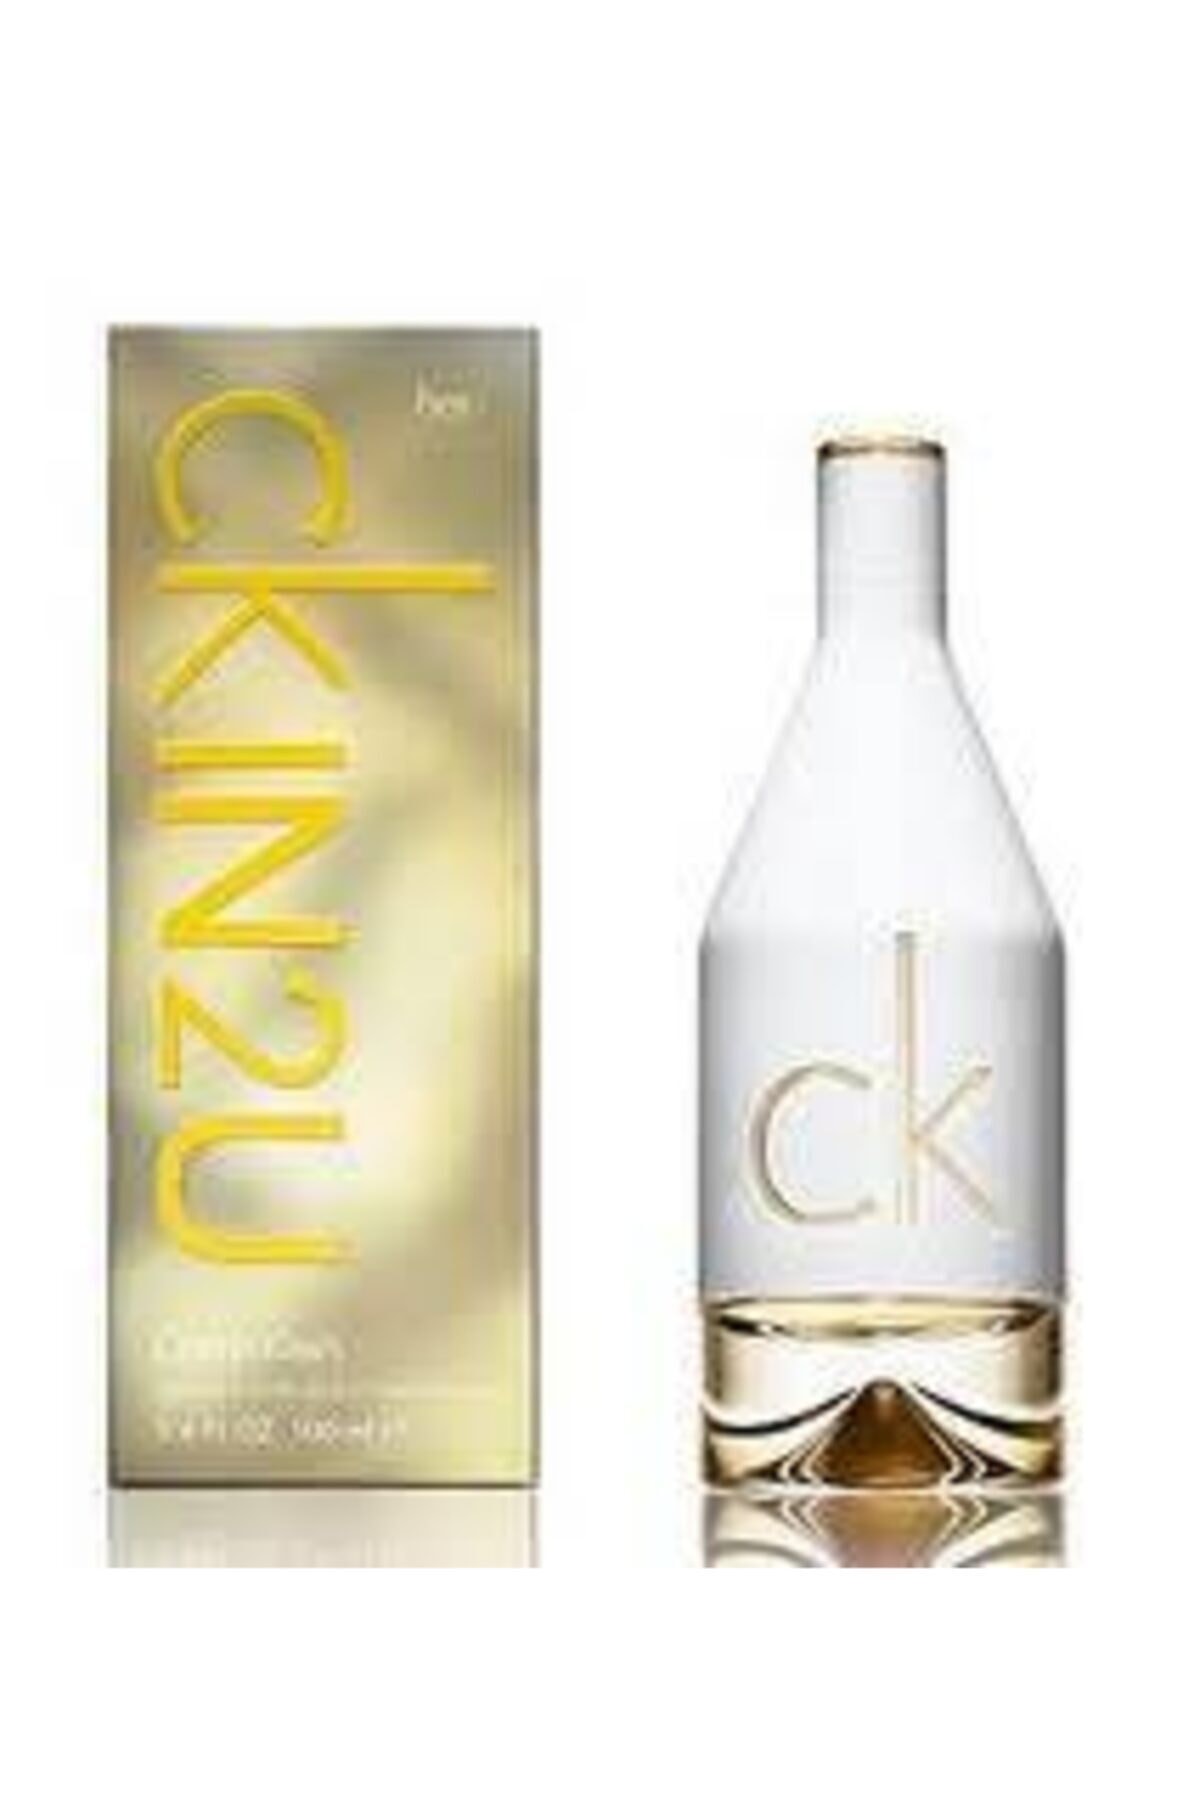 Calvin Klein CKIN2U 100 ML Edt Kadın Parfüm